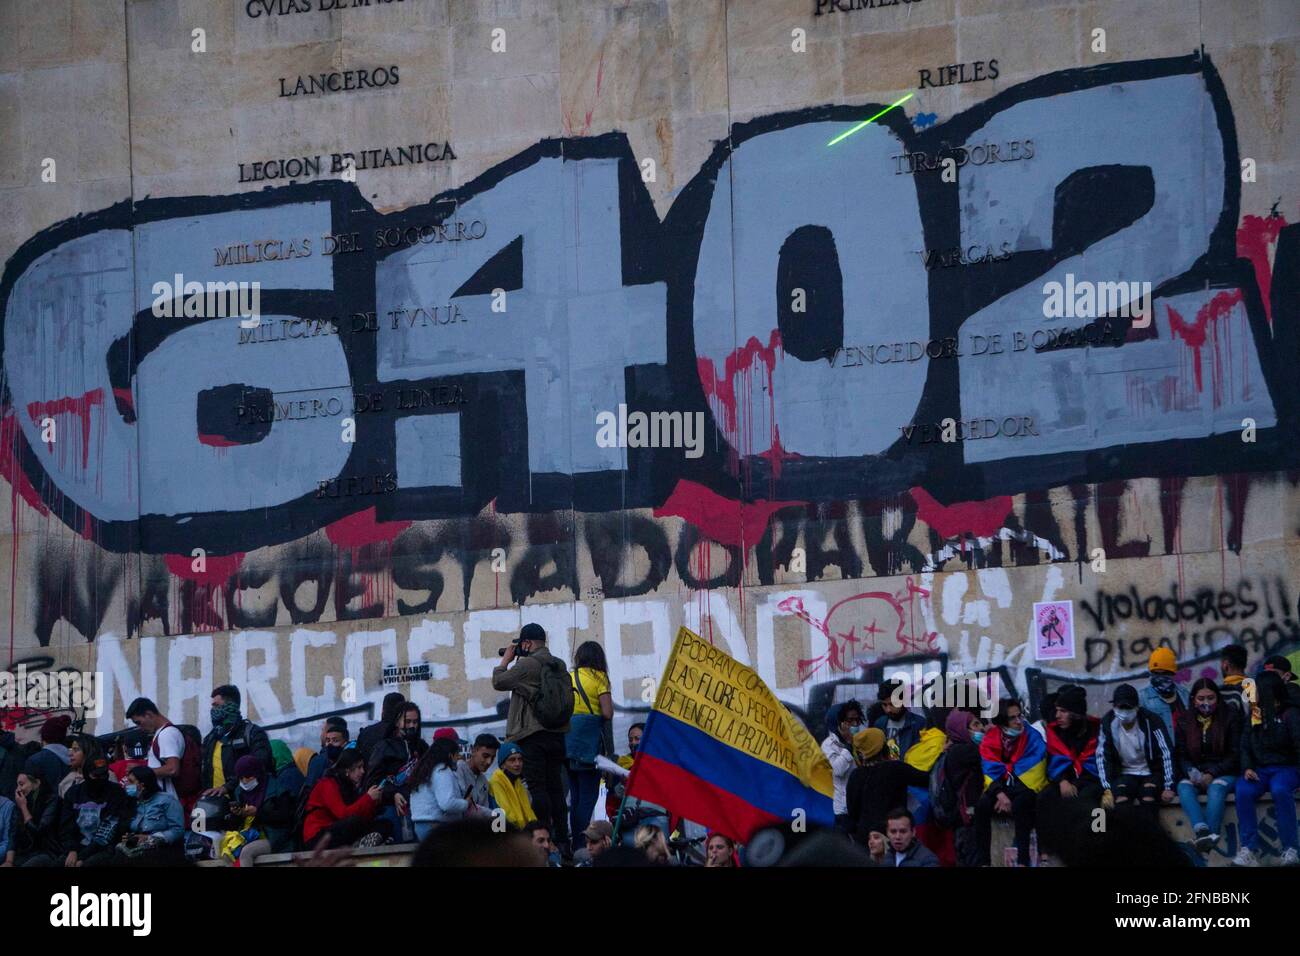 Le compte est bon - Page 39 Bogota-colombie-15-mai-2021-les-gens-peignent-un-graffiti-qui-dit-6402-en-reference-aux-faux-positifs-de-la-manifestation-le-jour-18-de-la-greve-nationale-a-bogota-credit-daniel-garzon-herazo-zuma-wire-alay-live-news-2fnbbnk